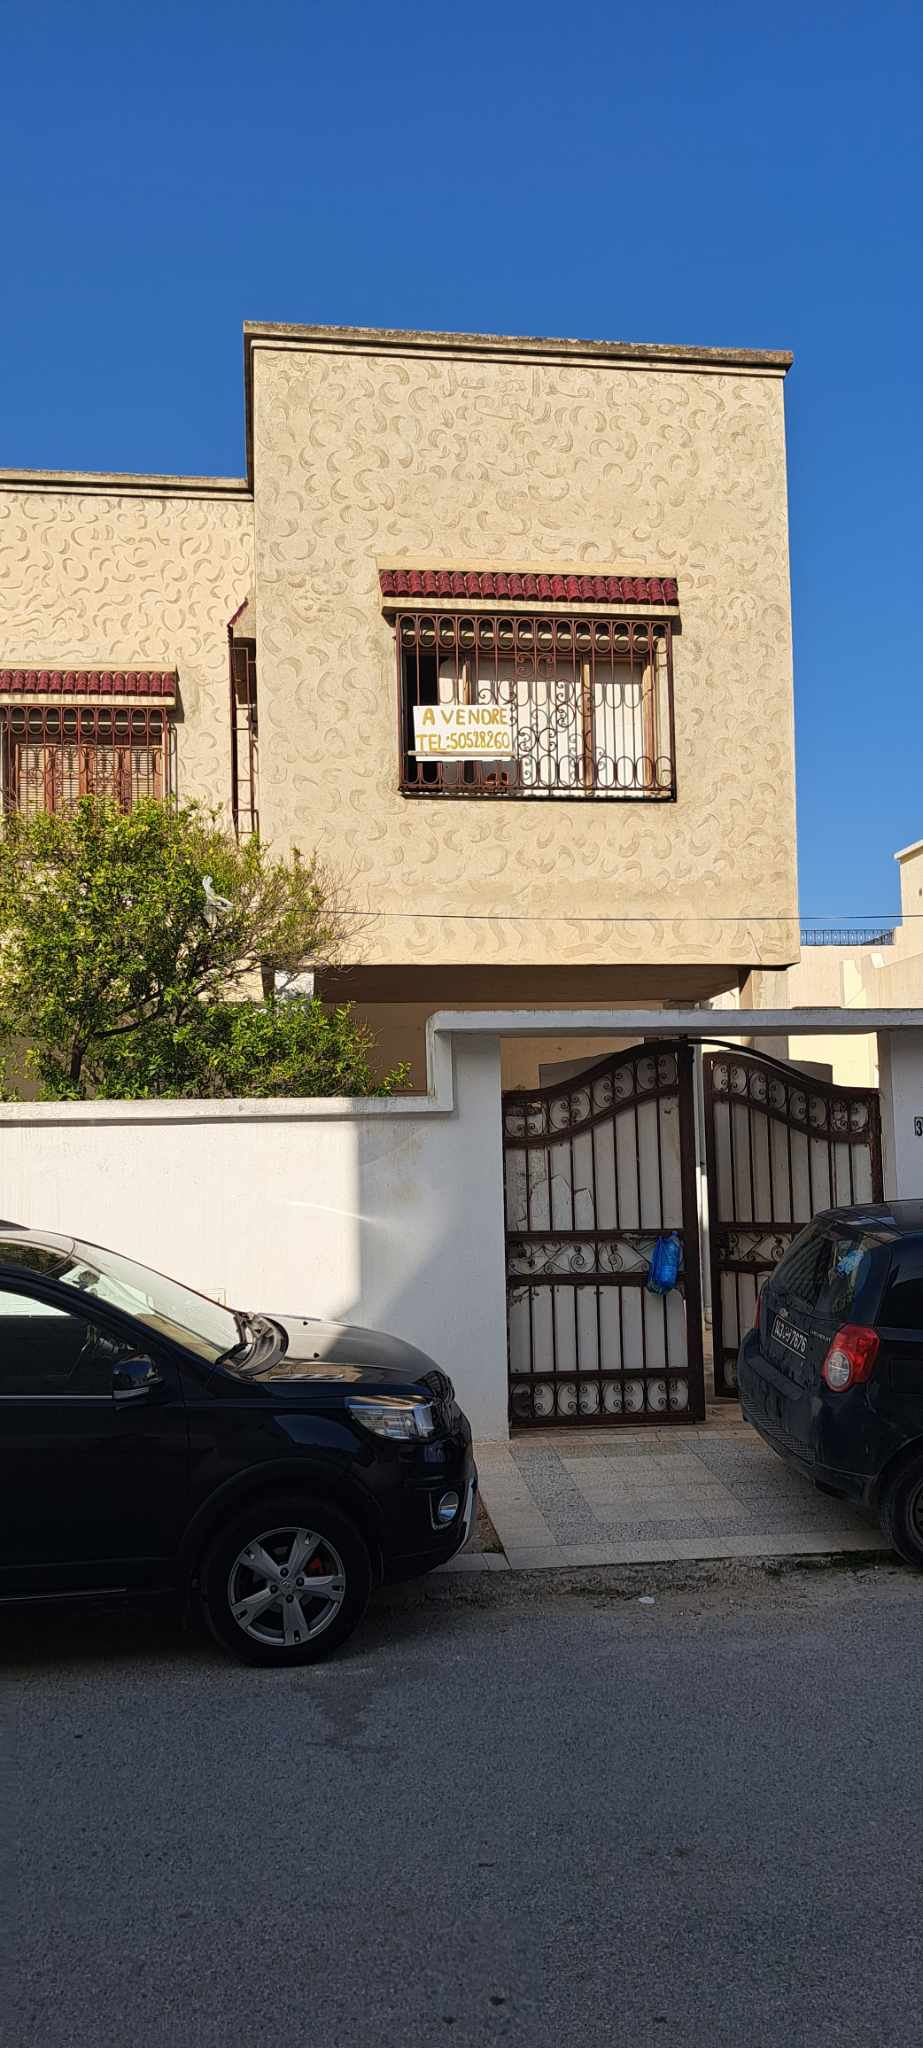 Rades Cite Mohamed Ali Vente Maisons Villa 3 niveaux rads cit med ali